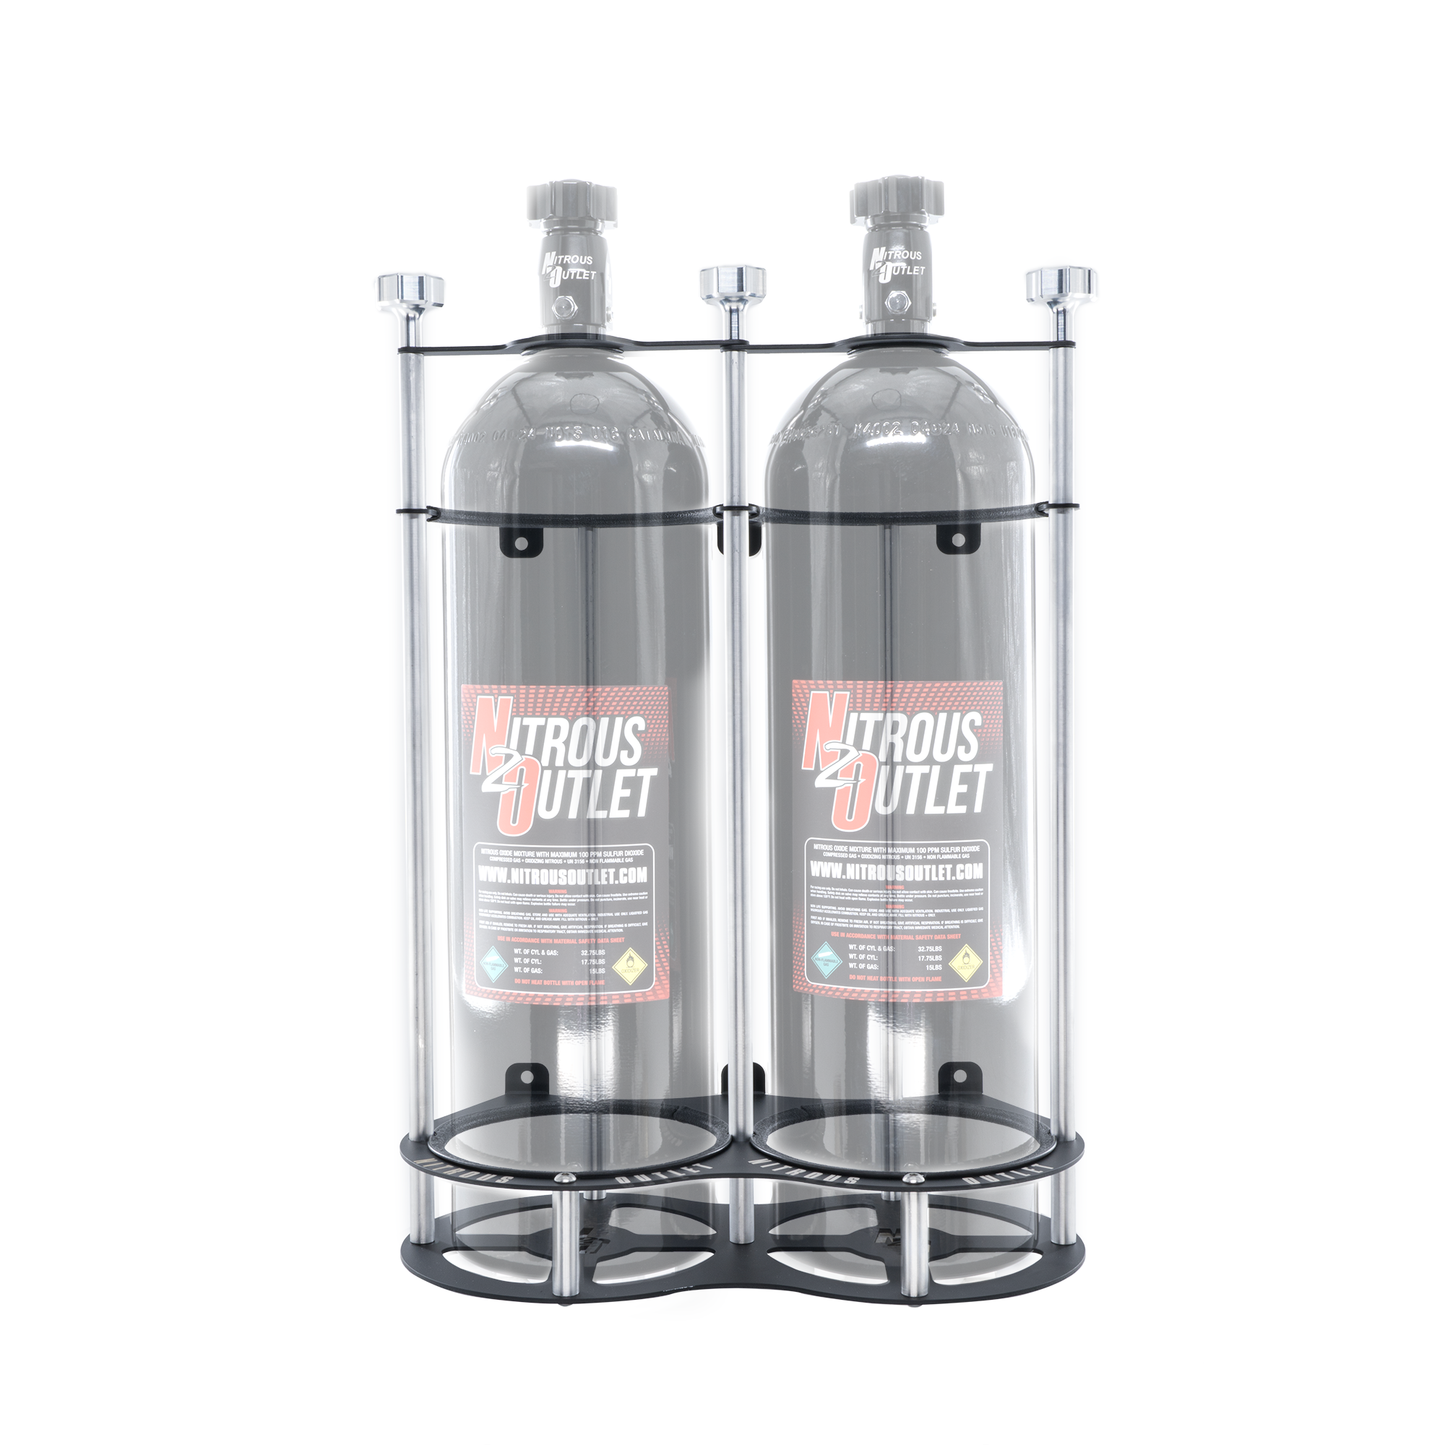 Nitrous Outlet Race-Light Dual 15lb Bottle Bracket - Vertical